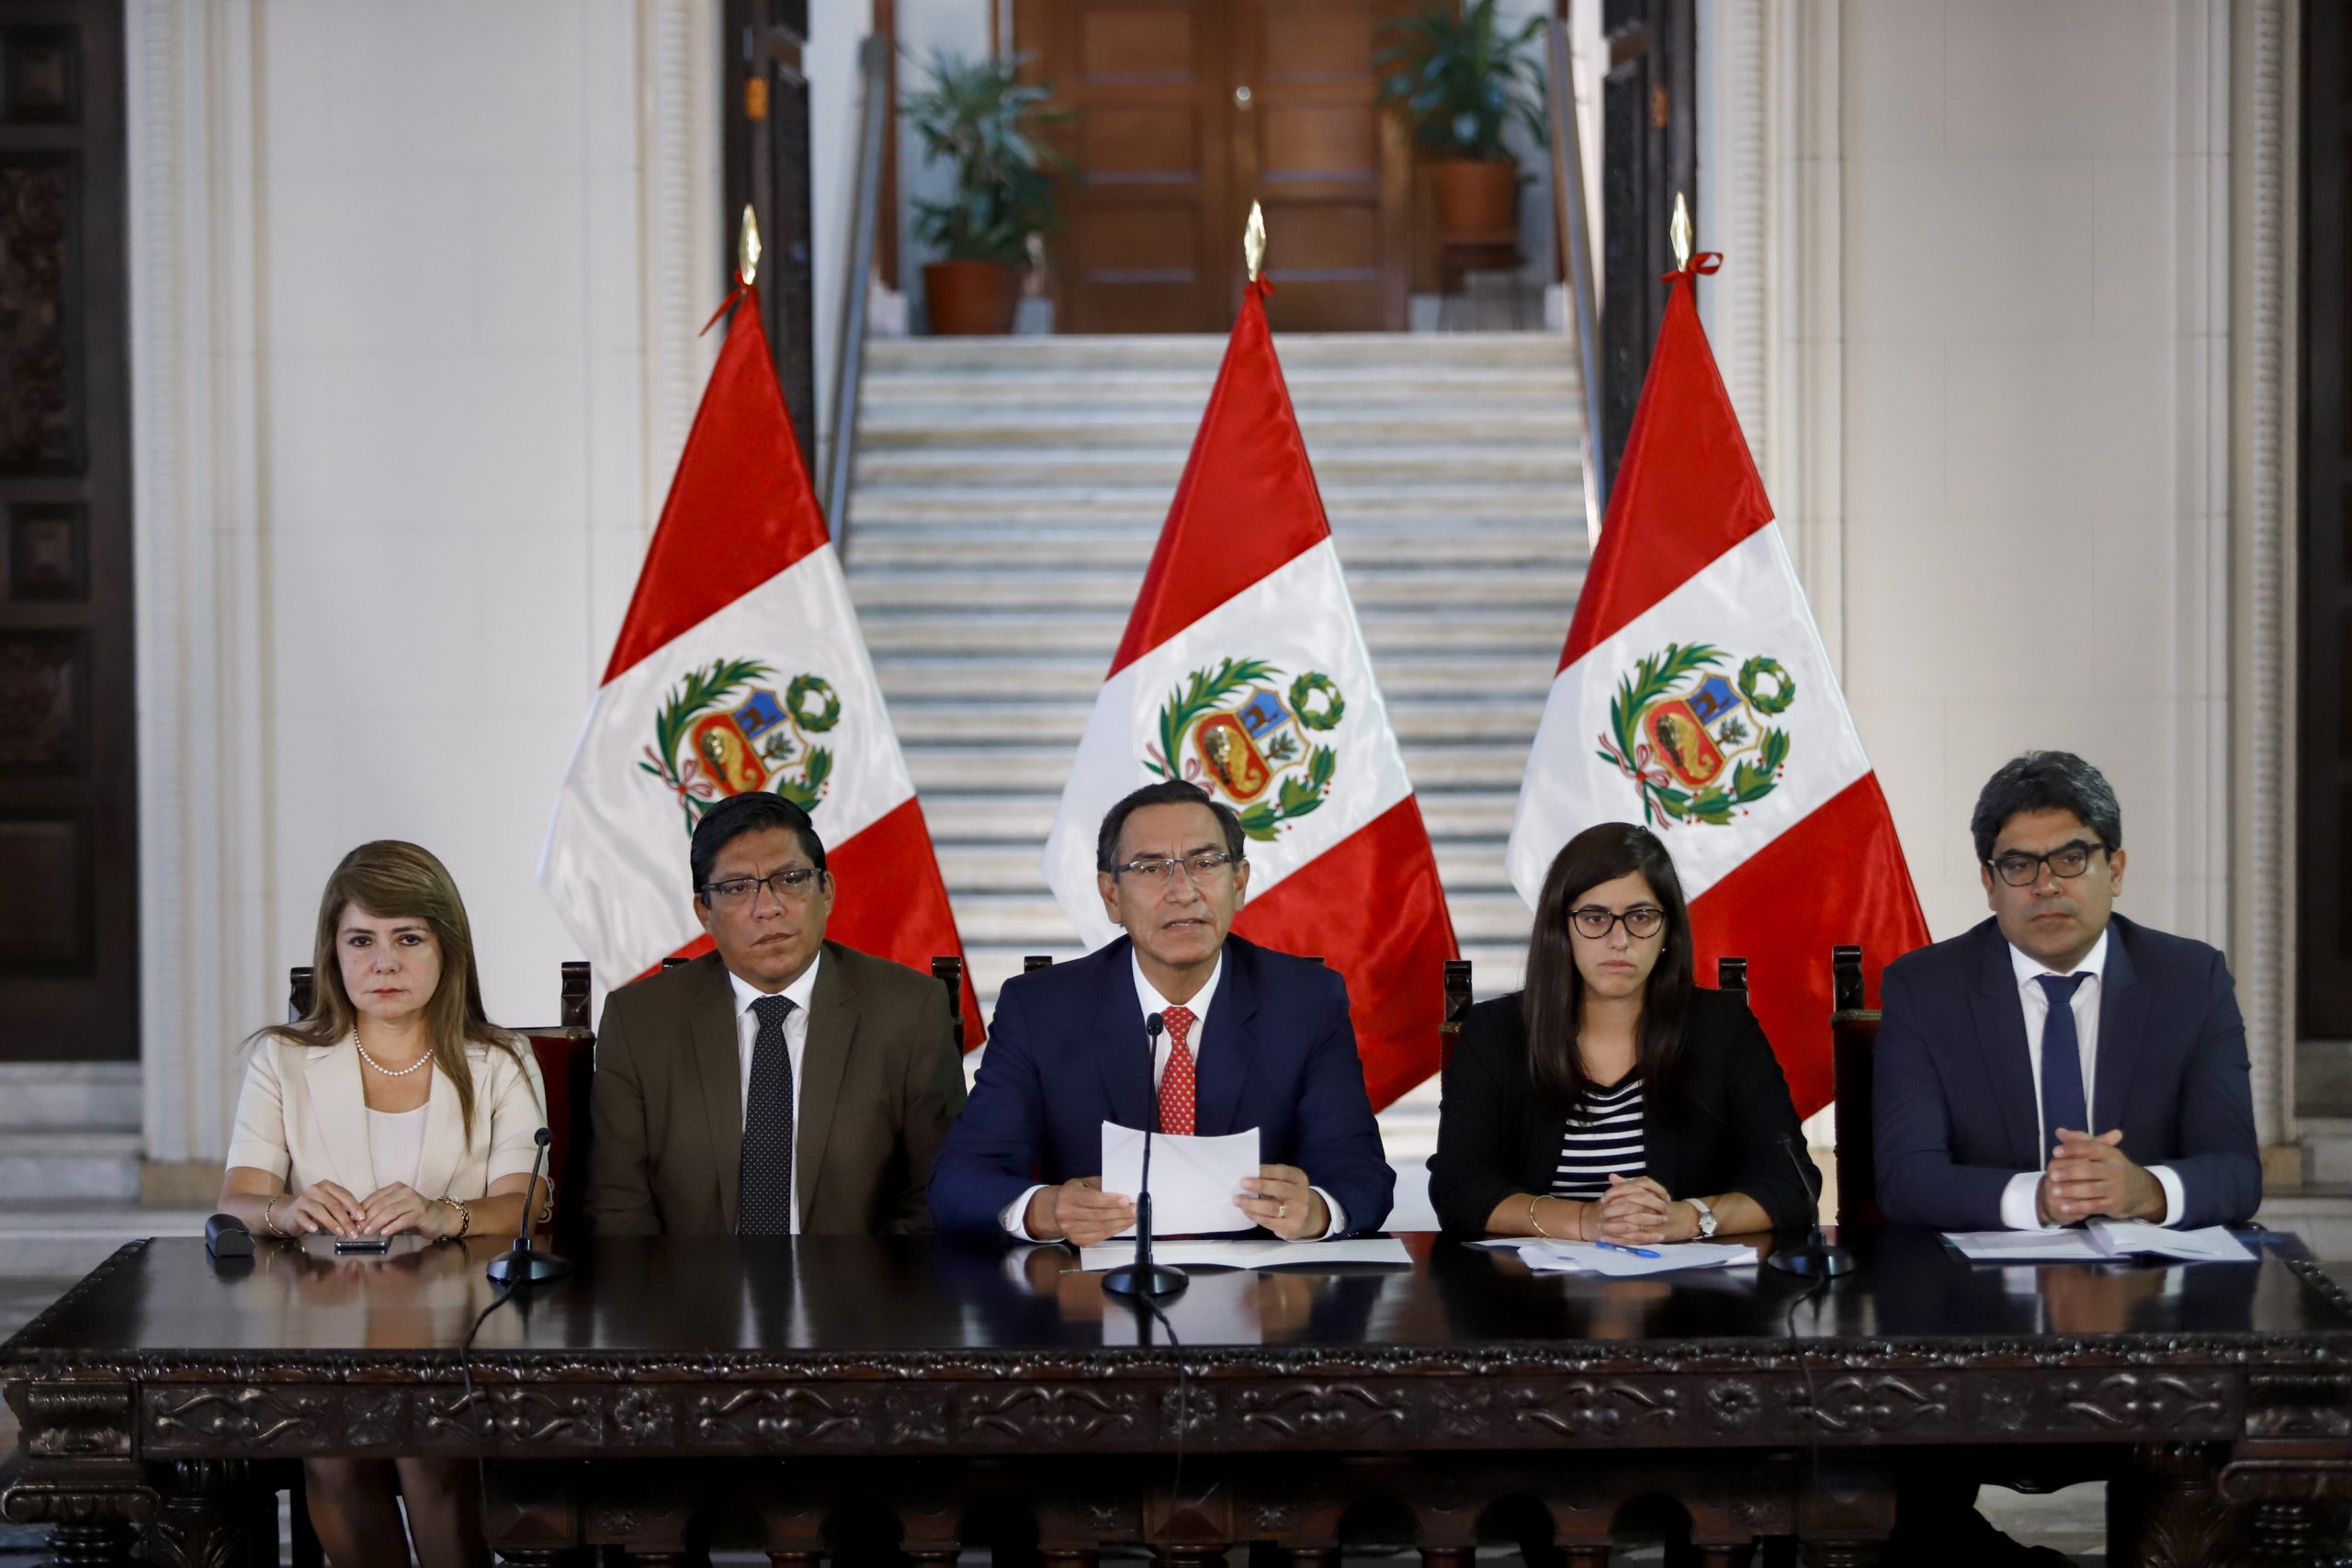 El juicio político contra el Presidente pierde fuerza en Perú